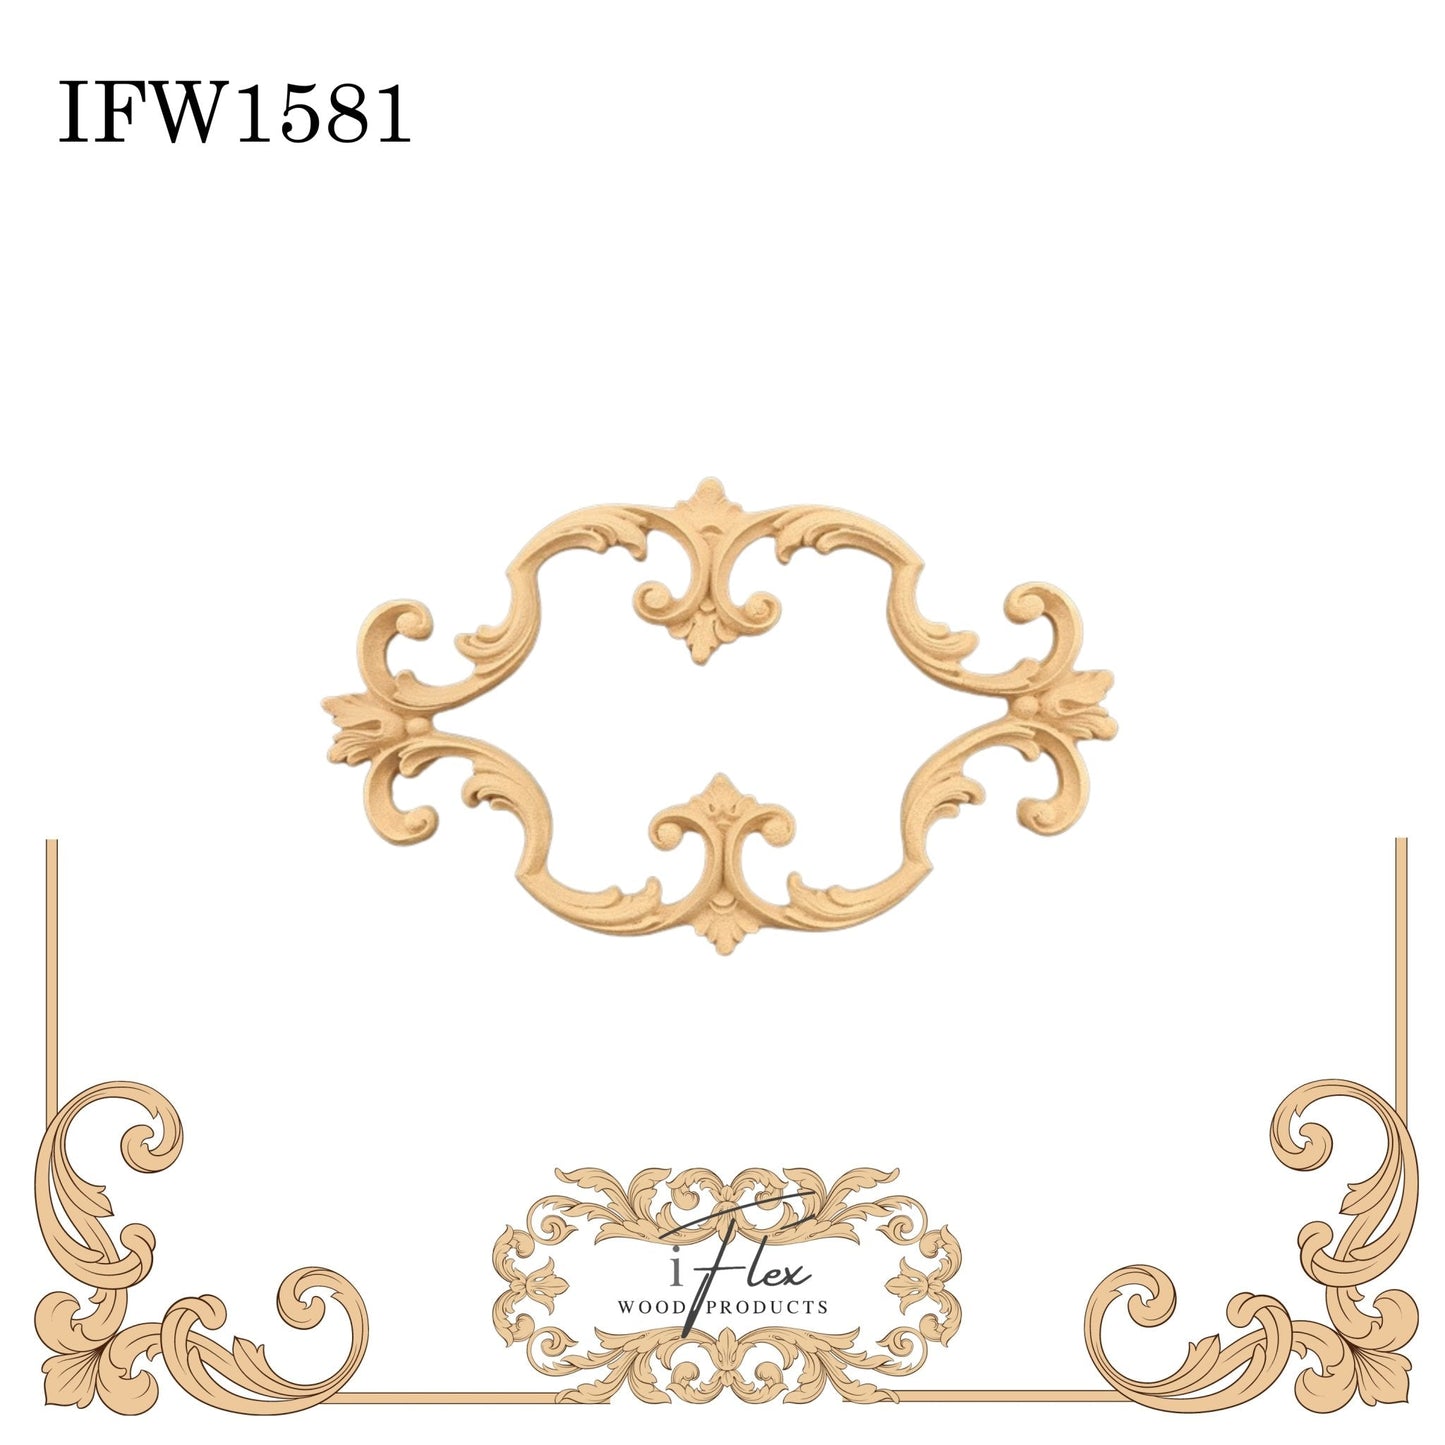 IFW 1581